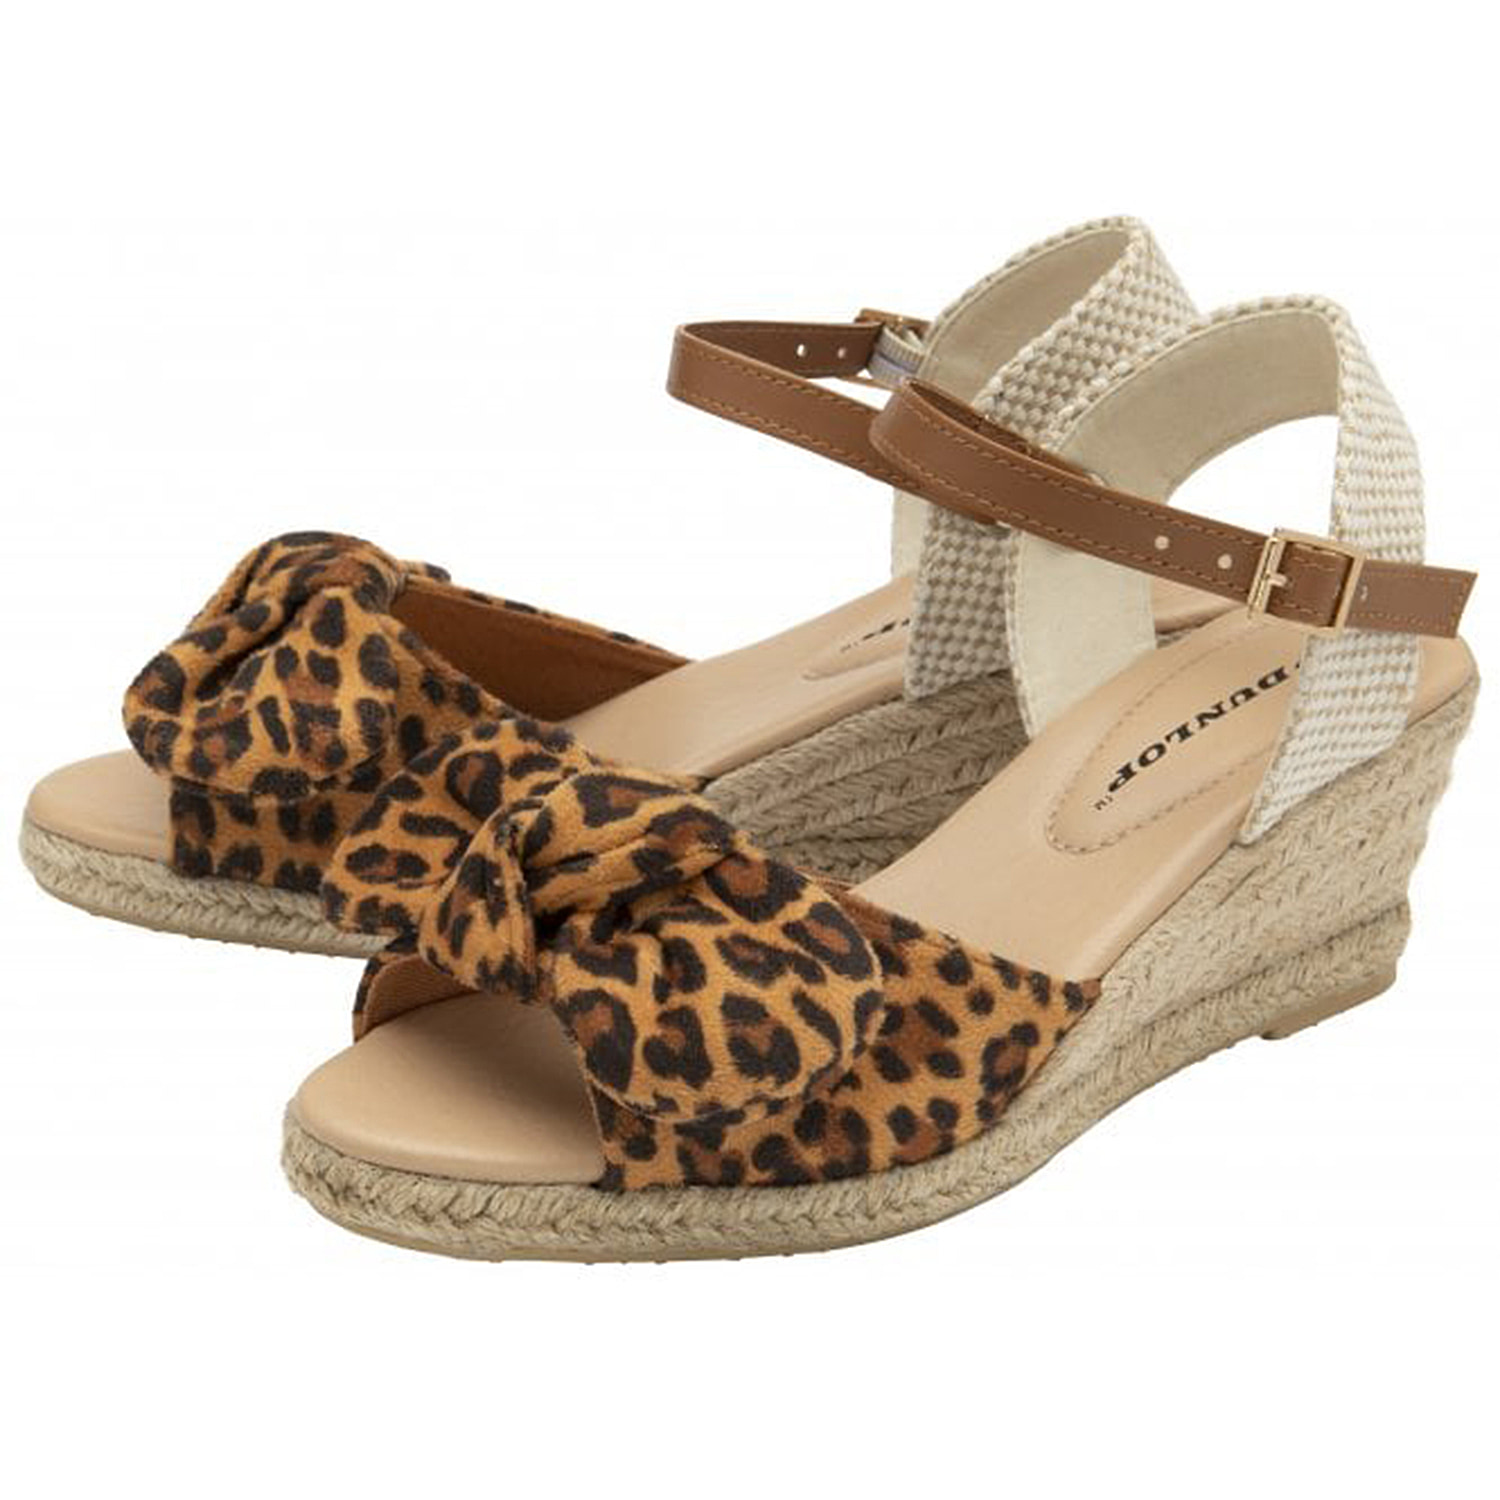 Dunlop-Leopard-Piper-Wedge-Open-Toe-Sandal-Size-3-Leopard